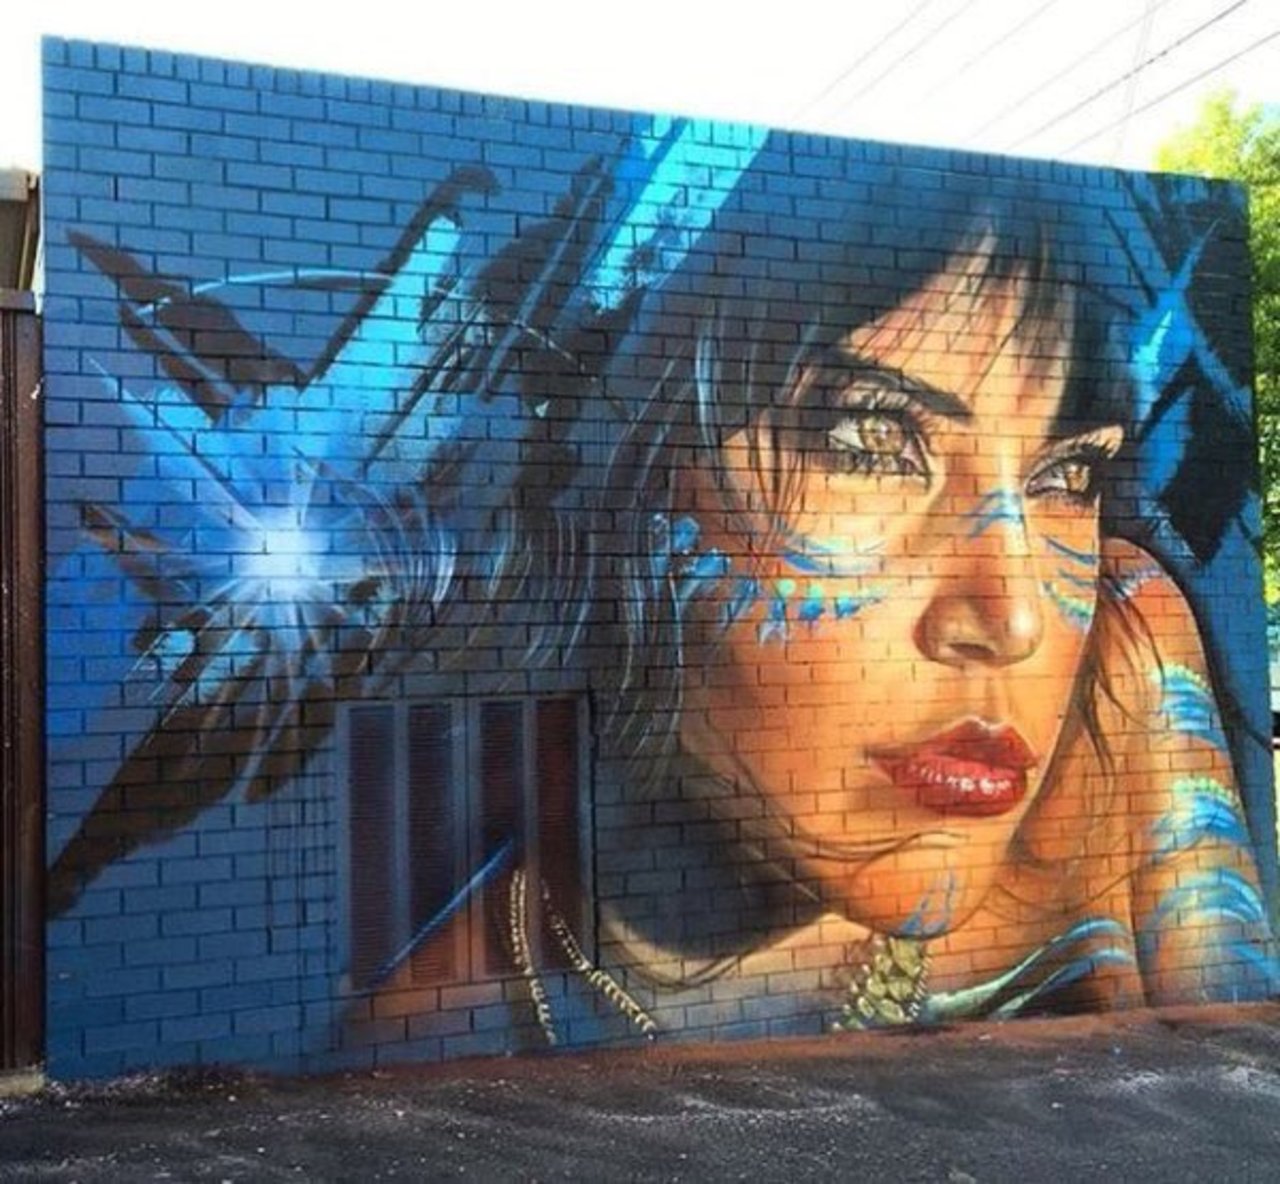 Mural by Adnate, #Melbourne #Australia #Streetart #urbanart #graffiti #mural #art https://t.co/B064j1wNSy